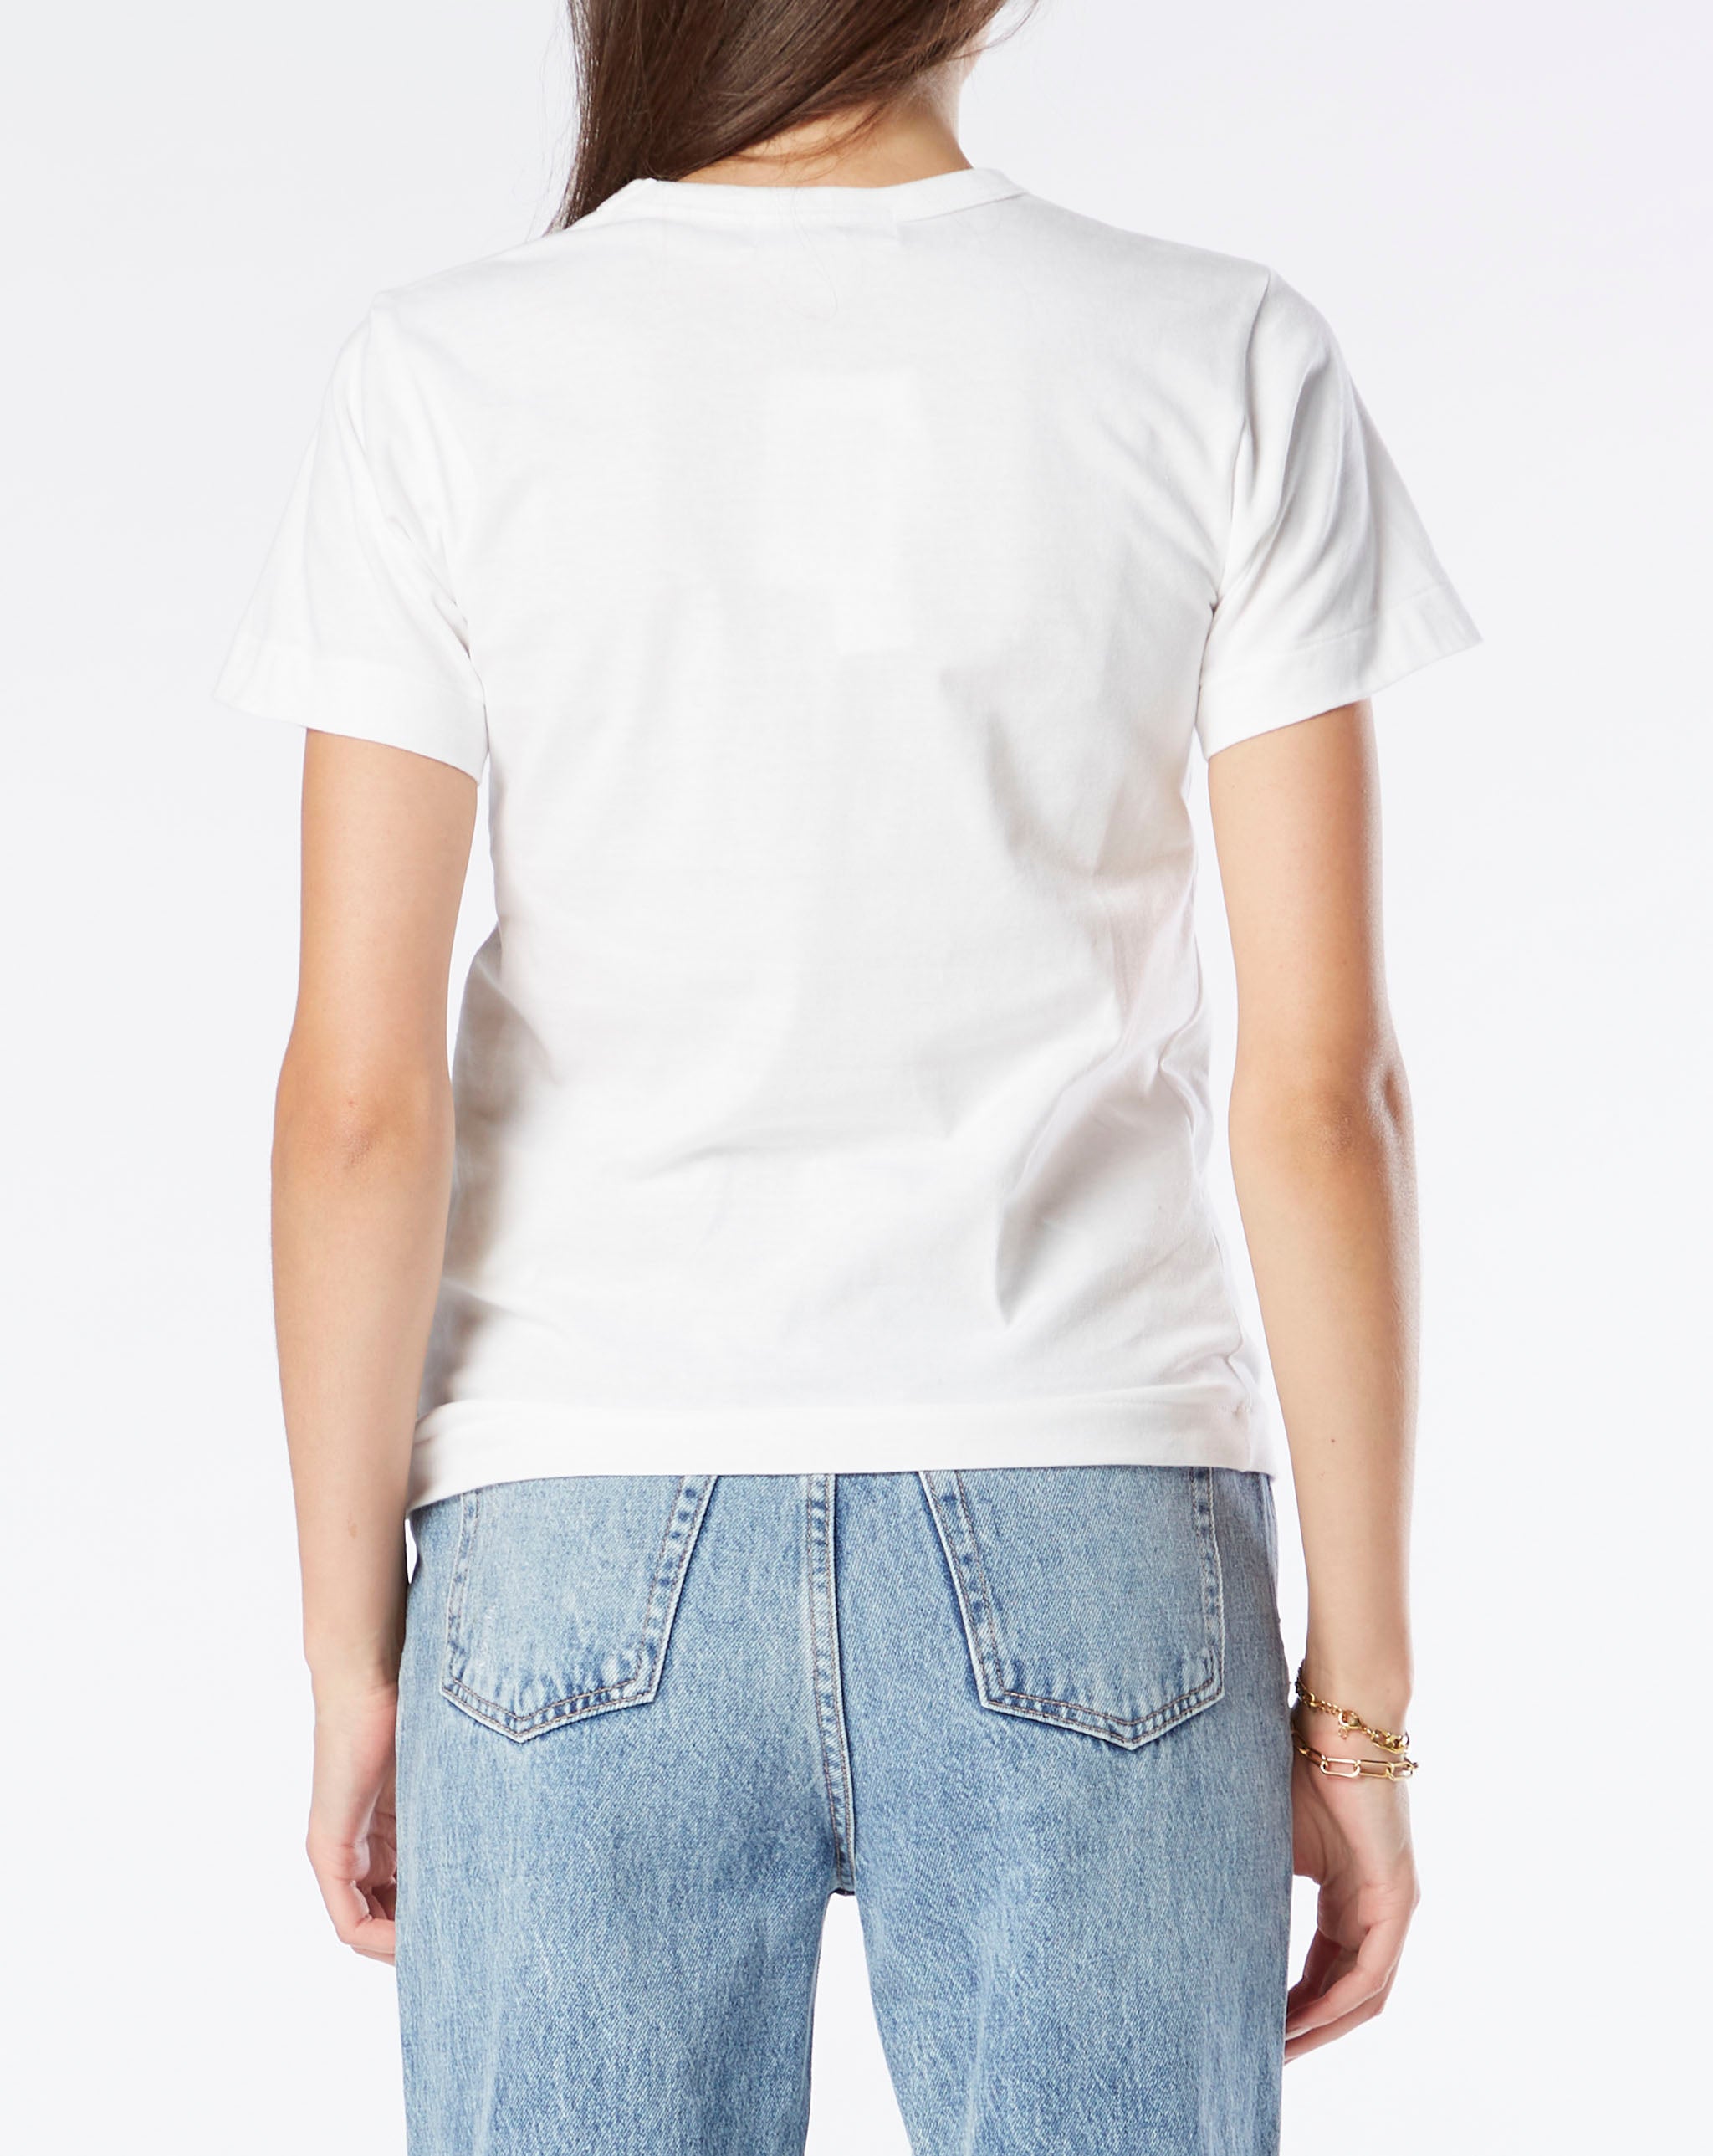 T-shirt Aus Baumwolle the Big Women's Camouflage Hearts T-Shirt  - Cheap Urlfreeze Jordan outlet